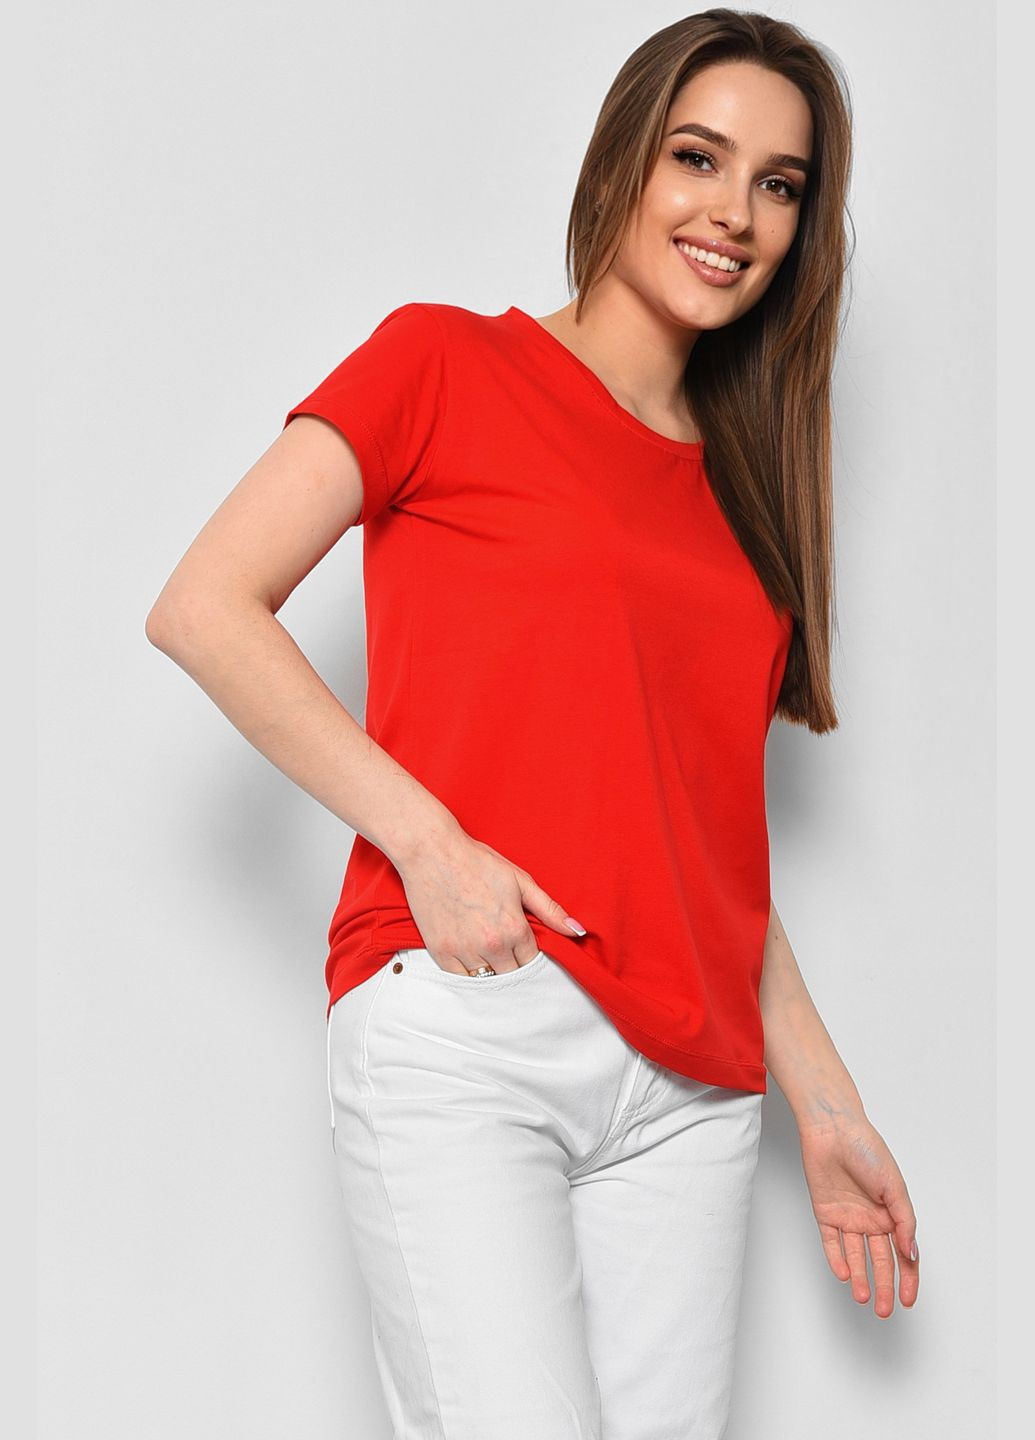 Красная летняя футболка женская однотонная красного цвета Let's Shop